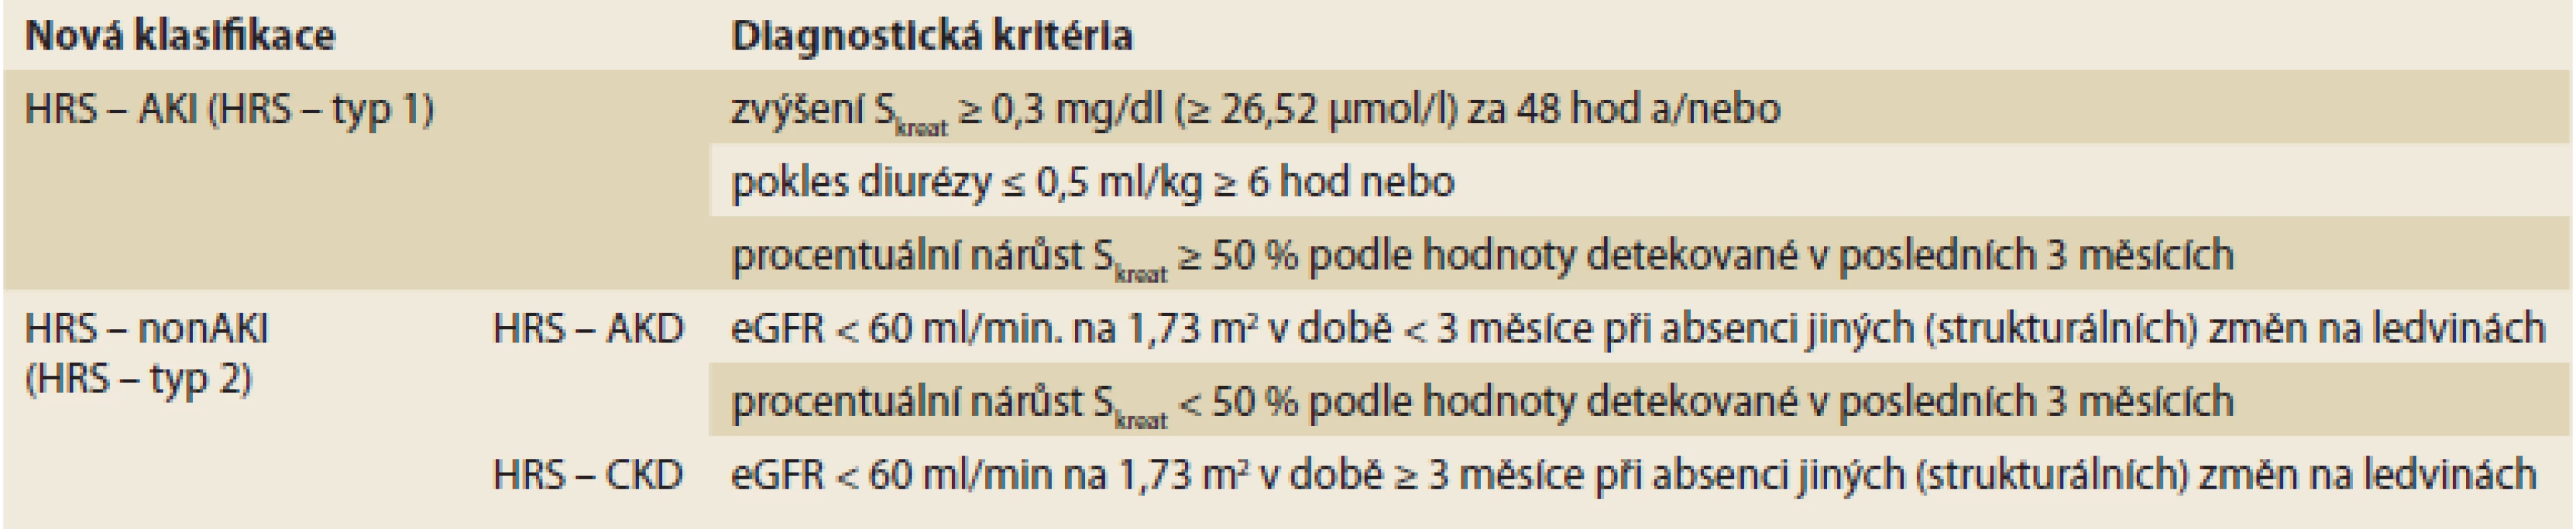 Nová klasifikace hepatorenálního syndromu (upraveno dle International Club of Ascites [41, 42]).<br>
New classification of hepatorenal syndrome (adjusted according to the International Club of Ascites [41, 42]).